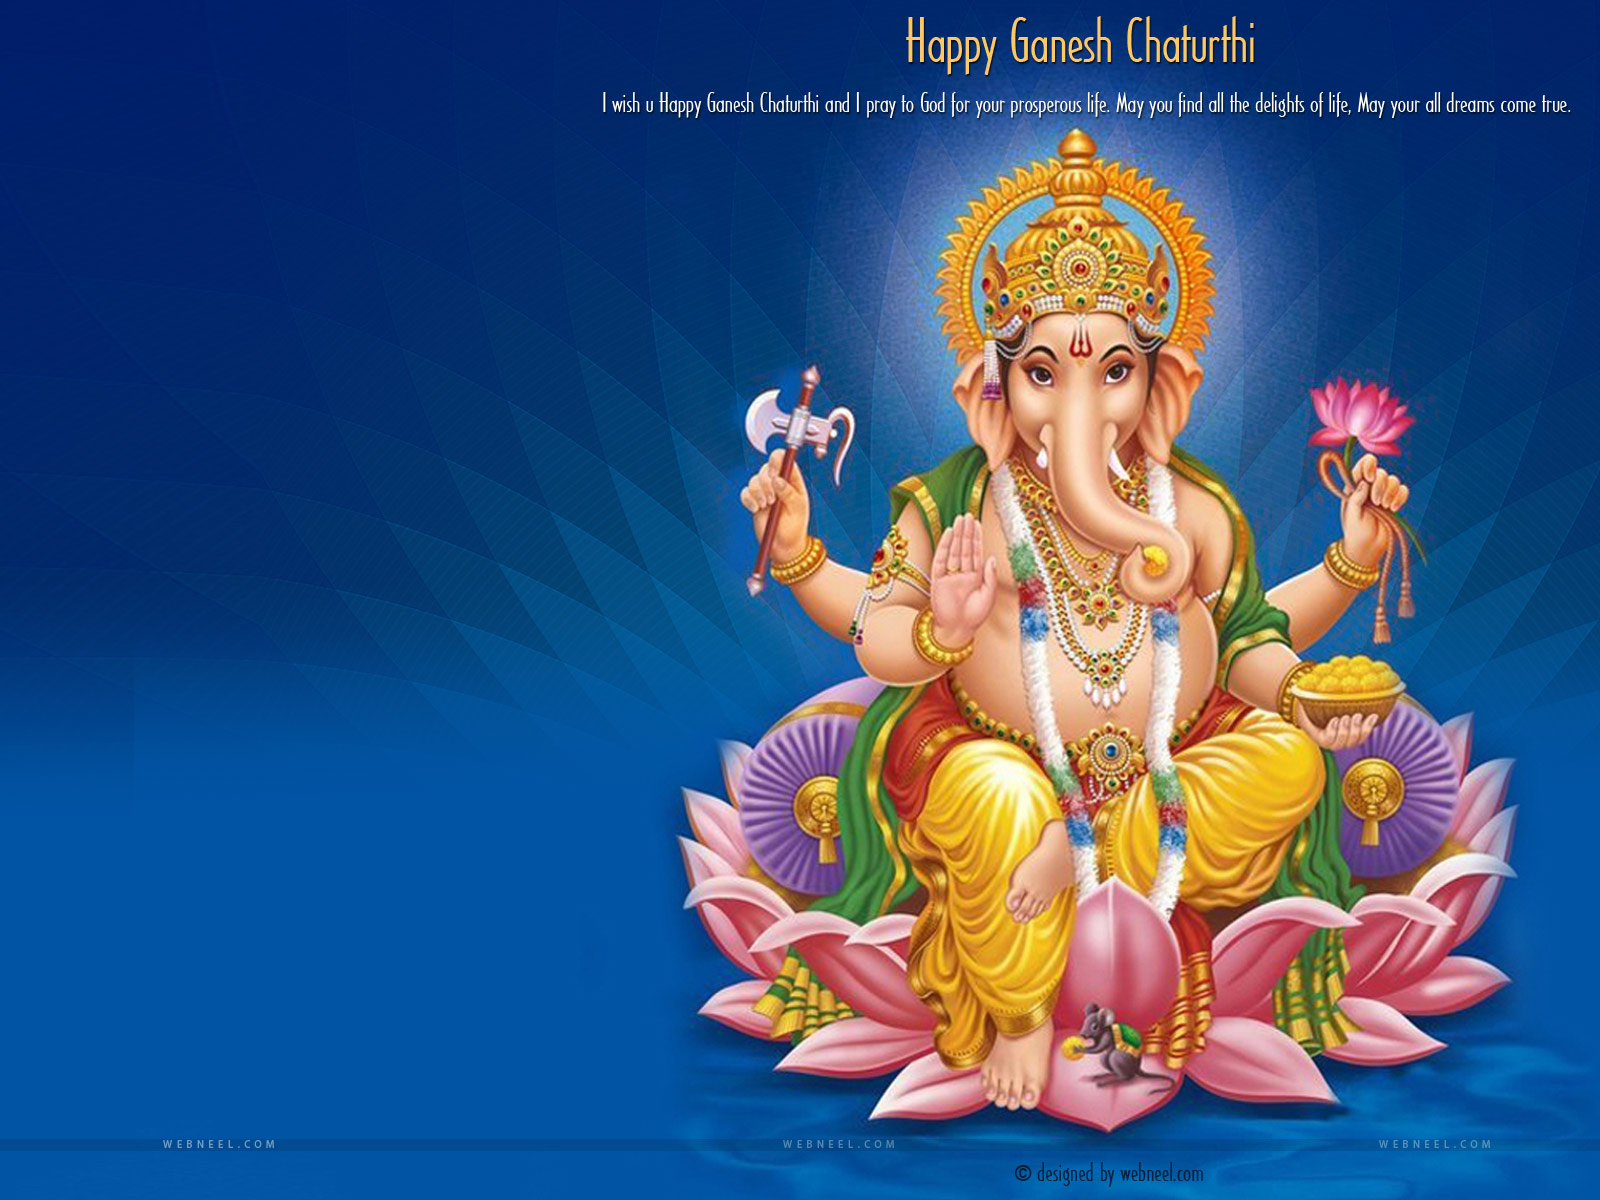 Ohm Ganesha Sign Pattern Background  Hindu god Stock Photo by SEABOY888  344401564